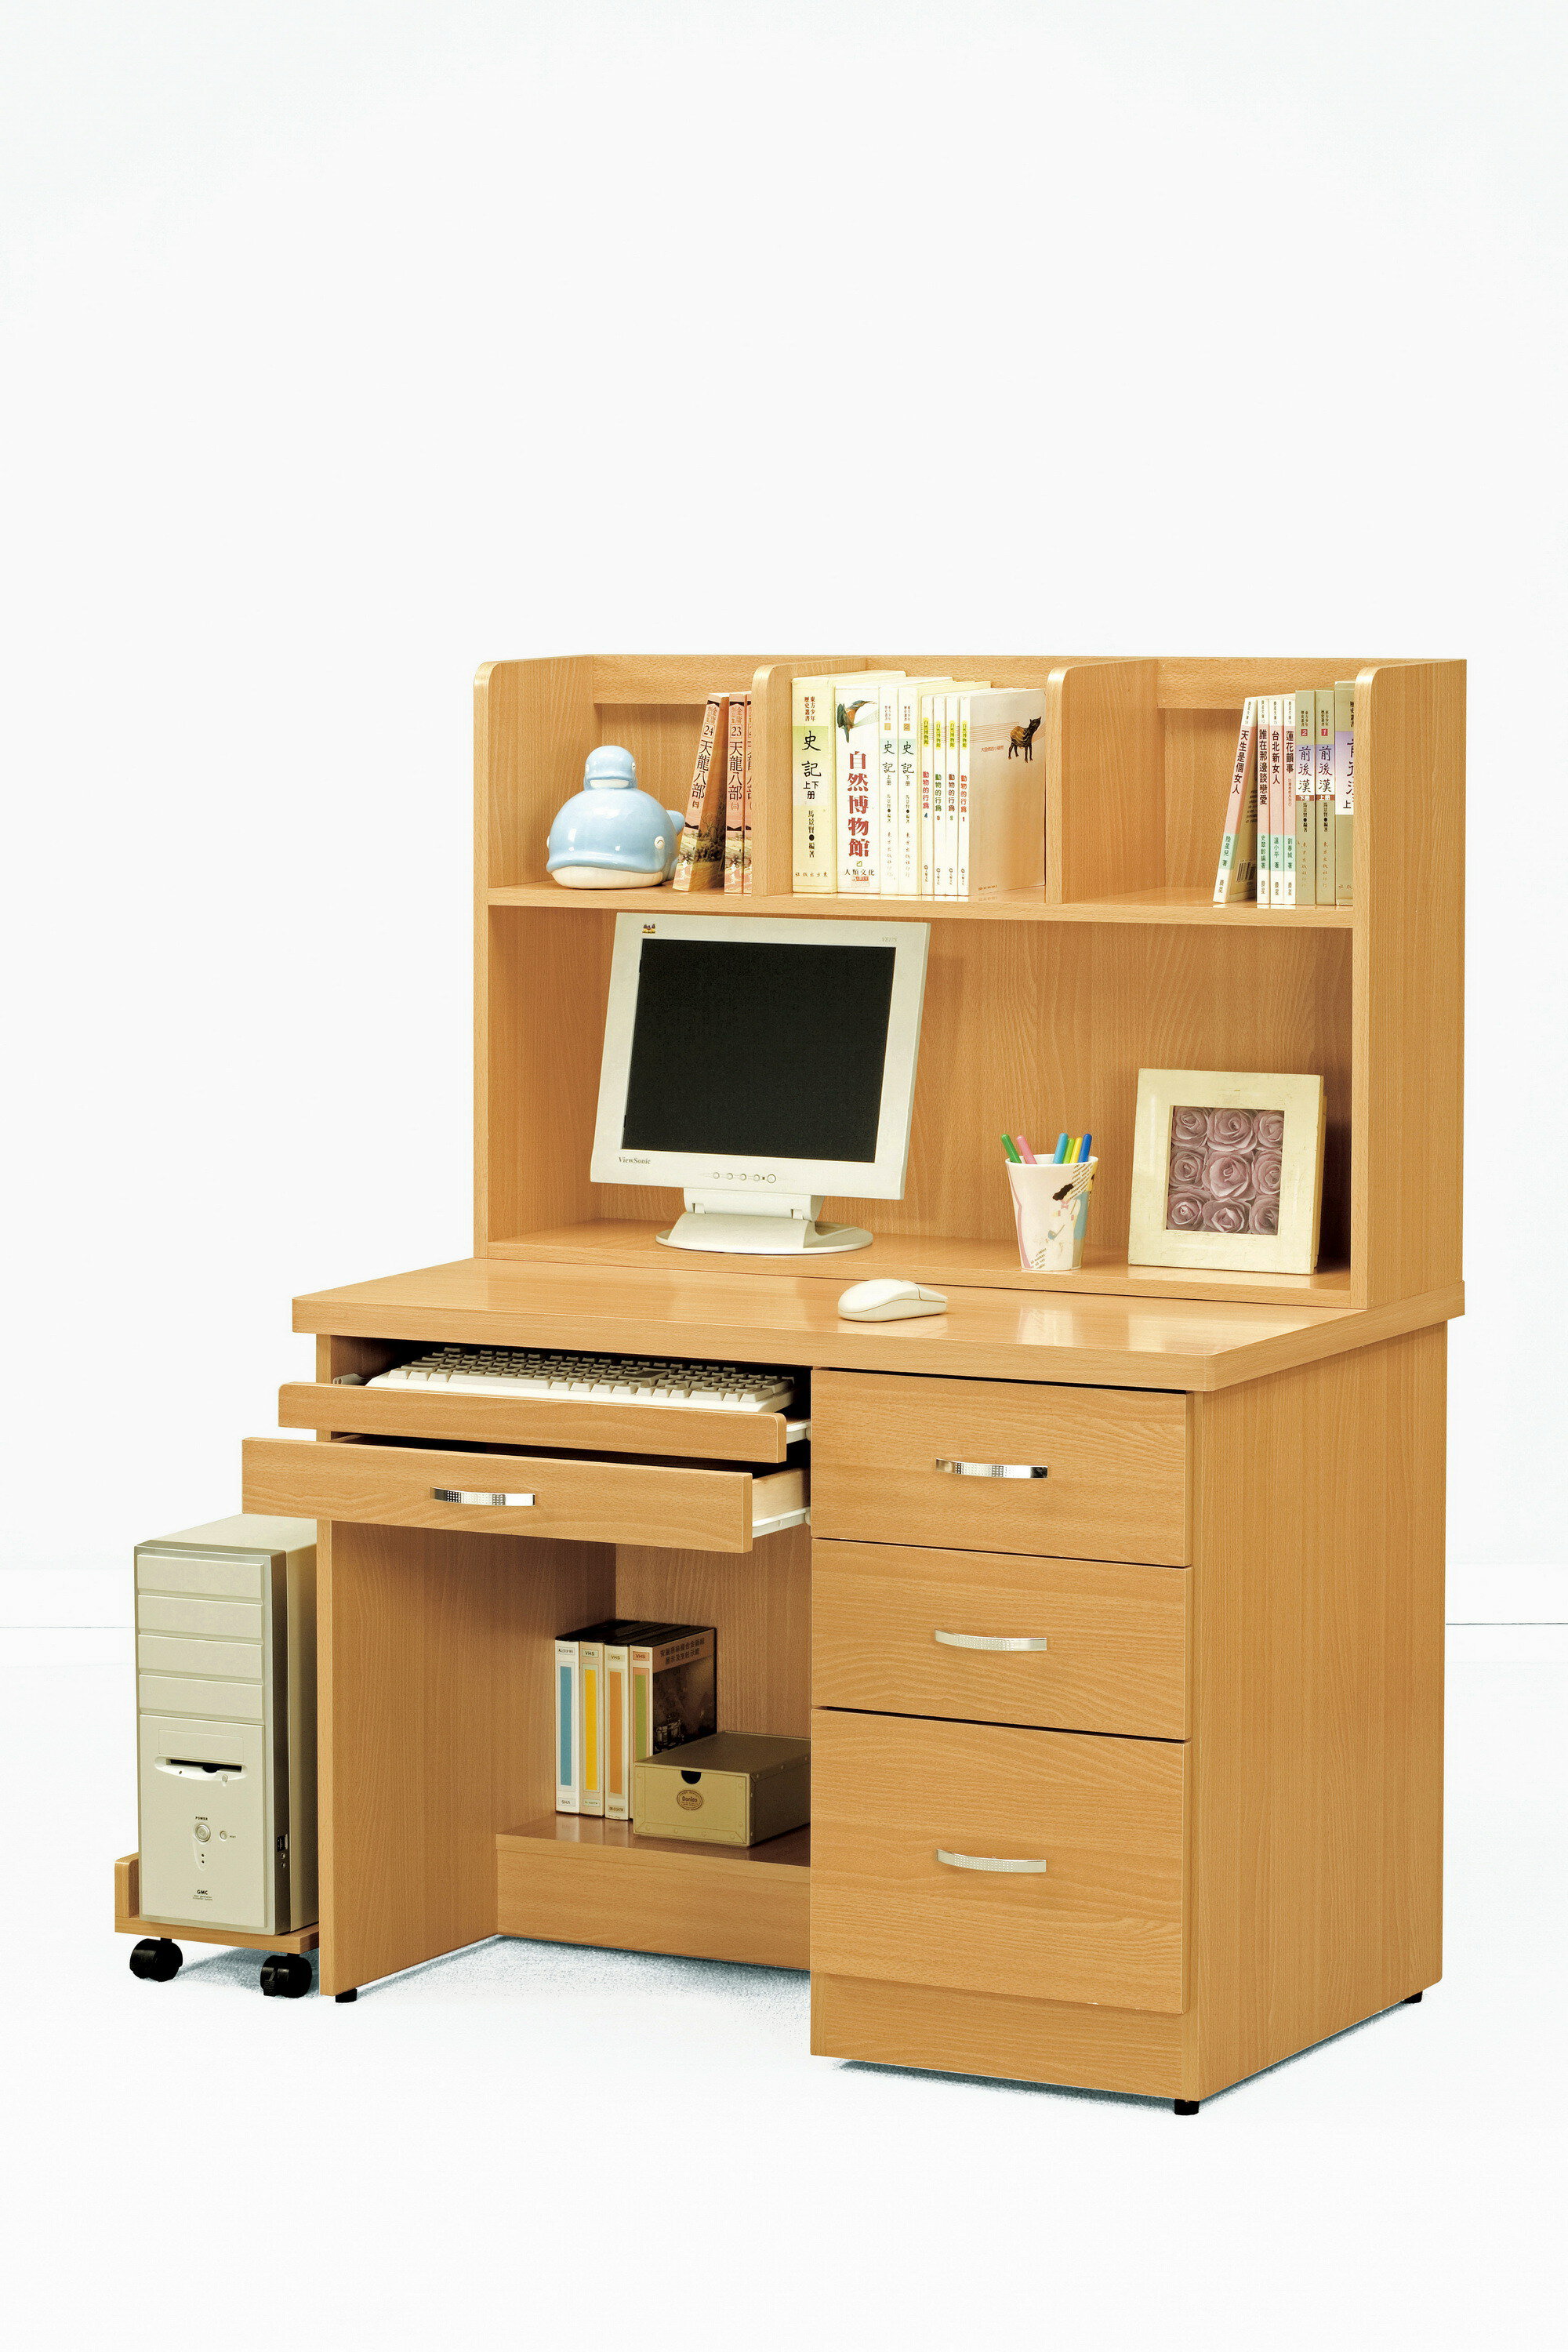 【尚品家具】CM-213-5 貝莎3.5尺檜木色電腦桌下座